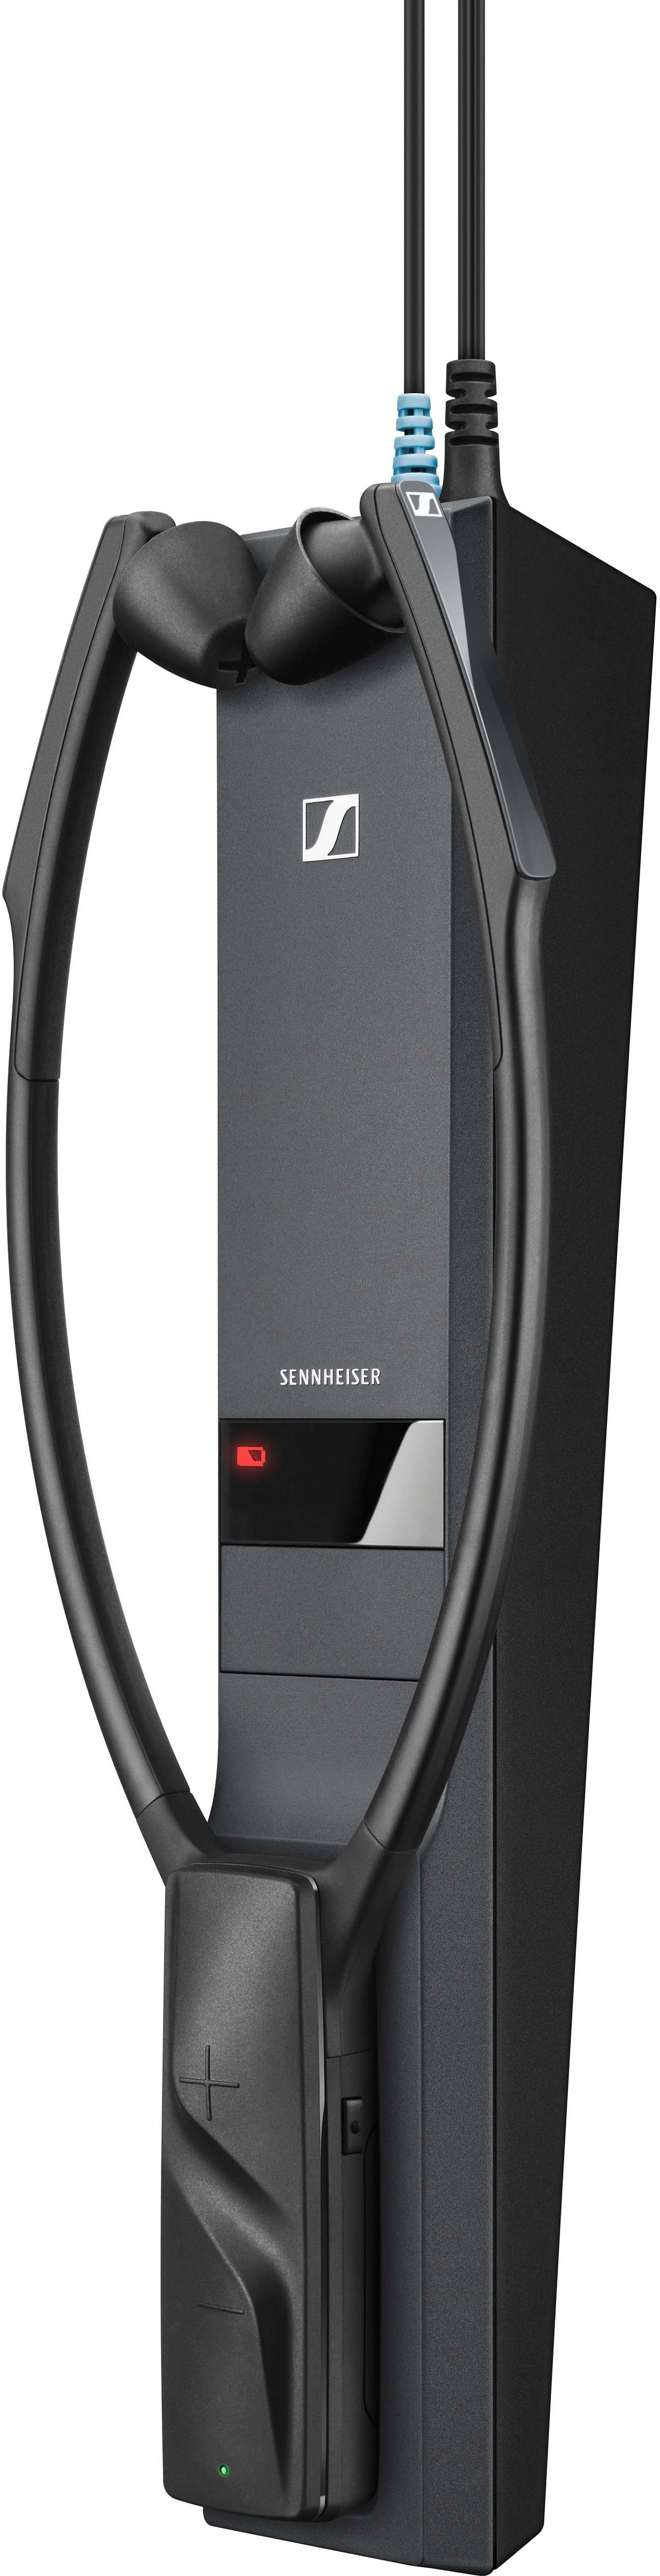 Left View: Sennheiser - MOMENTUM Wireless Noise-Canceling Over-the-Ear Headphones - Black